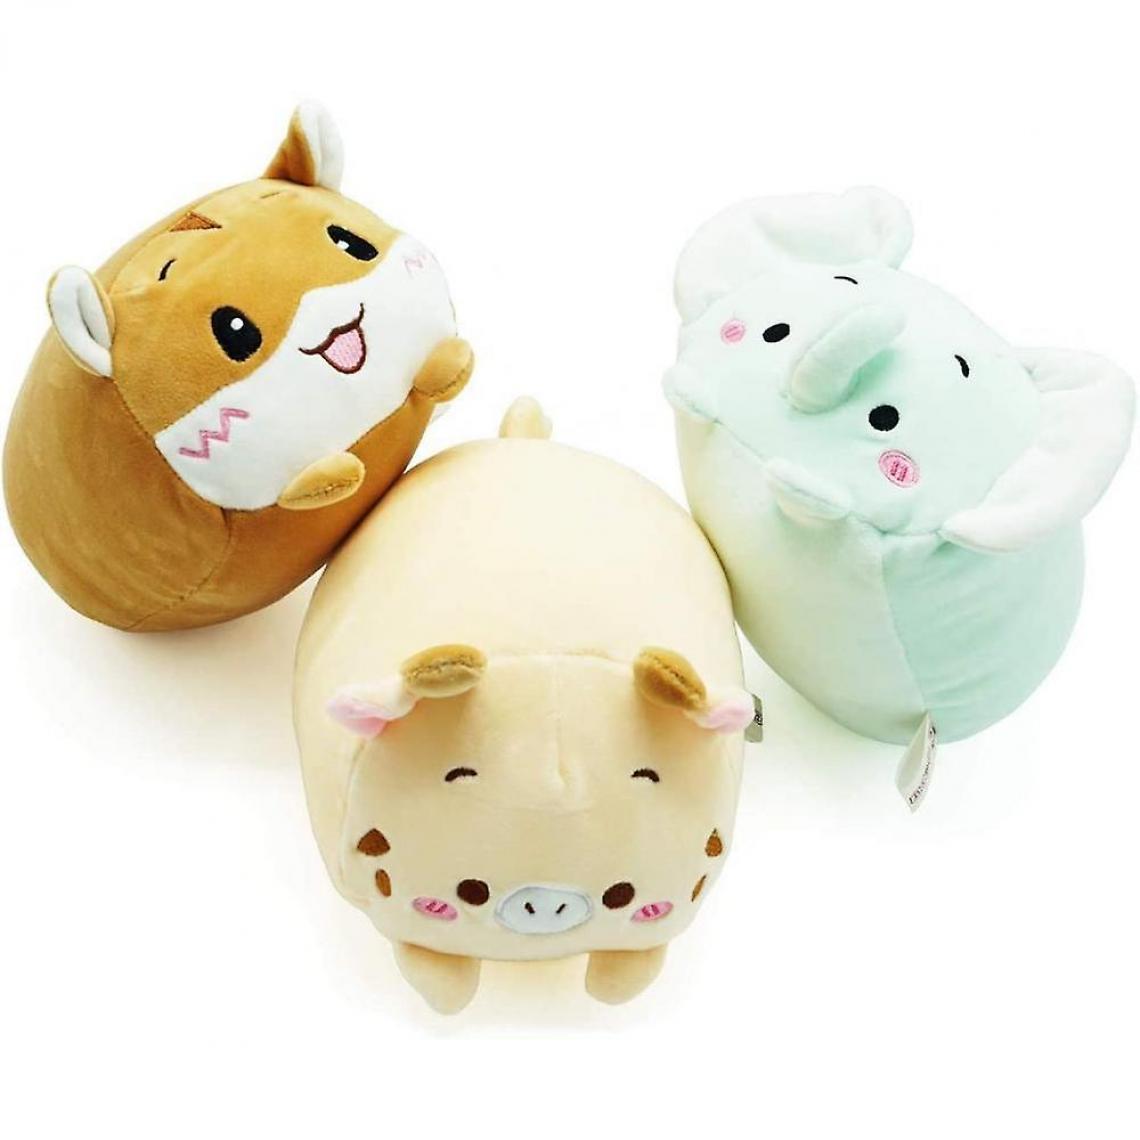 Universal - Oreillers en peluche de 20cm 3, poupées chattes mignonnes jouets animaux en peluche (1) - Doudous